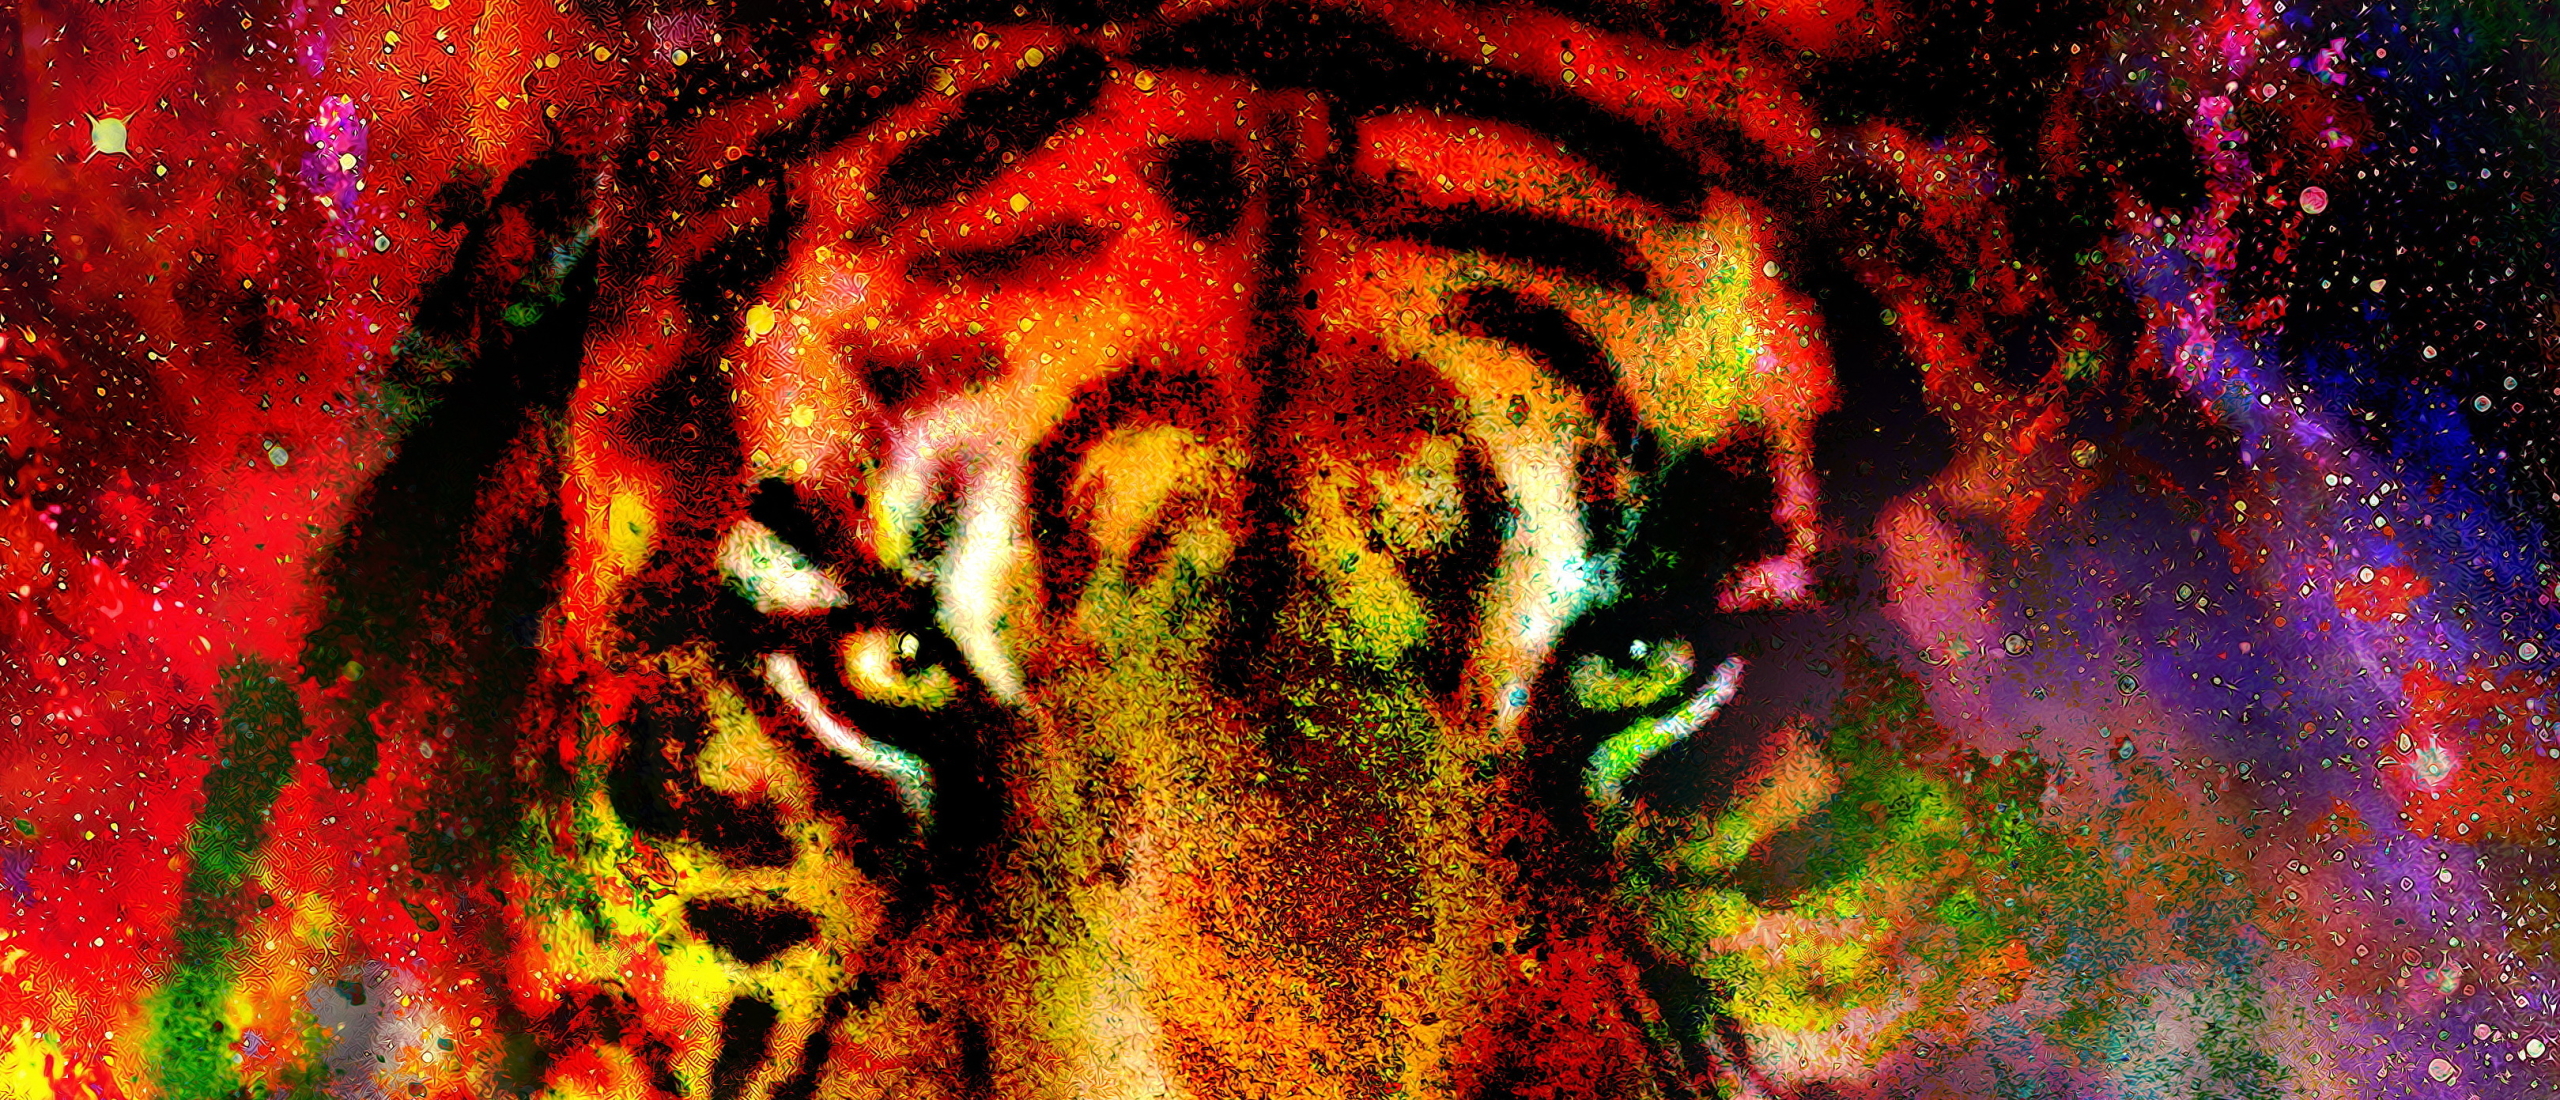 De tijger in jou ontwaakt